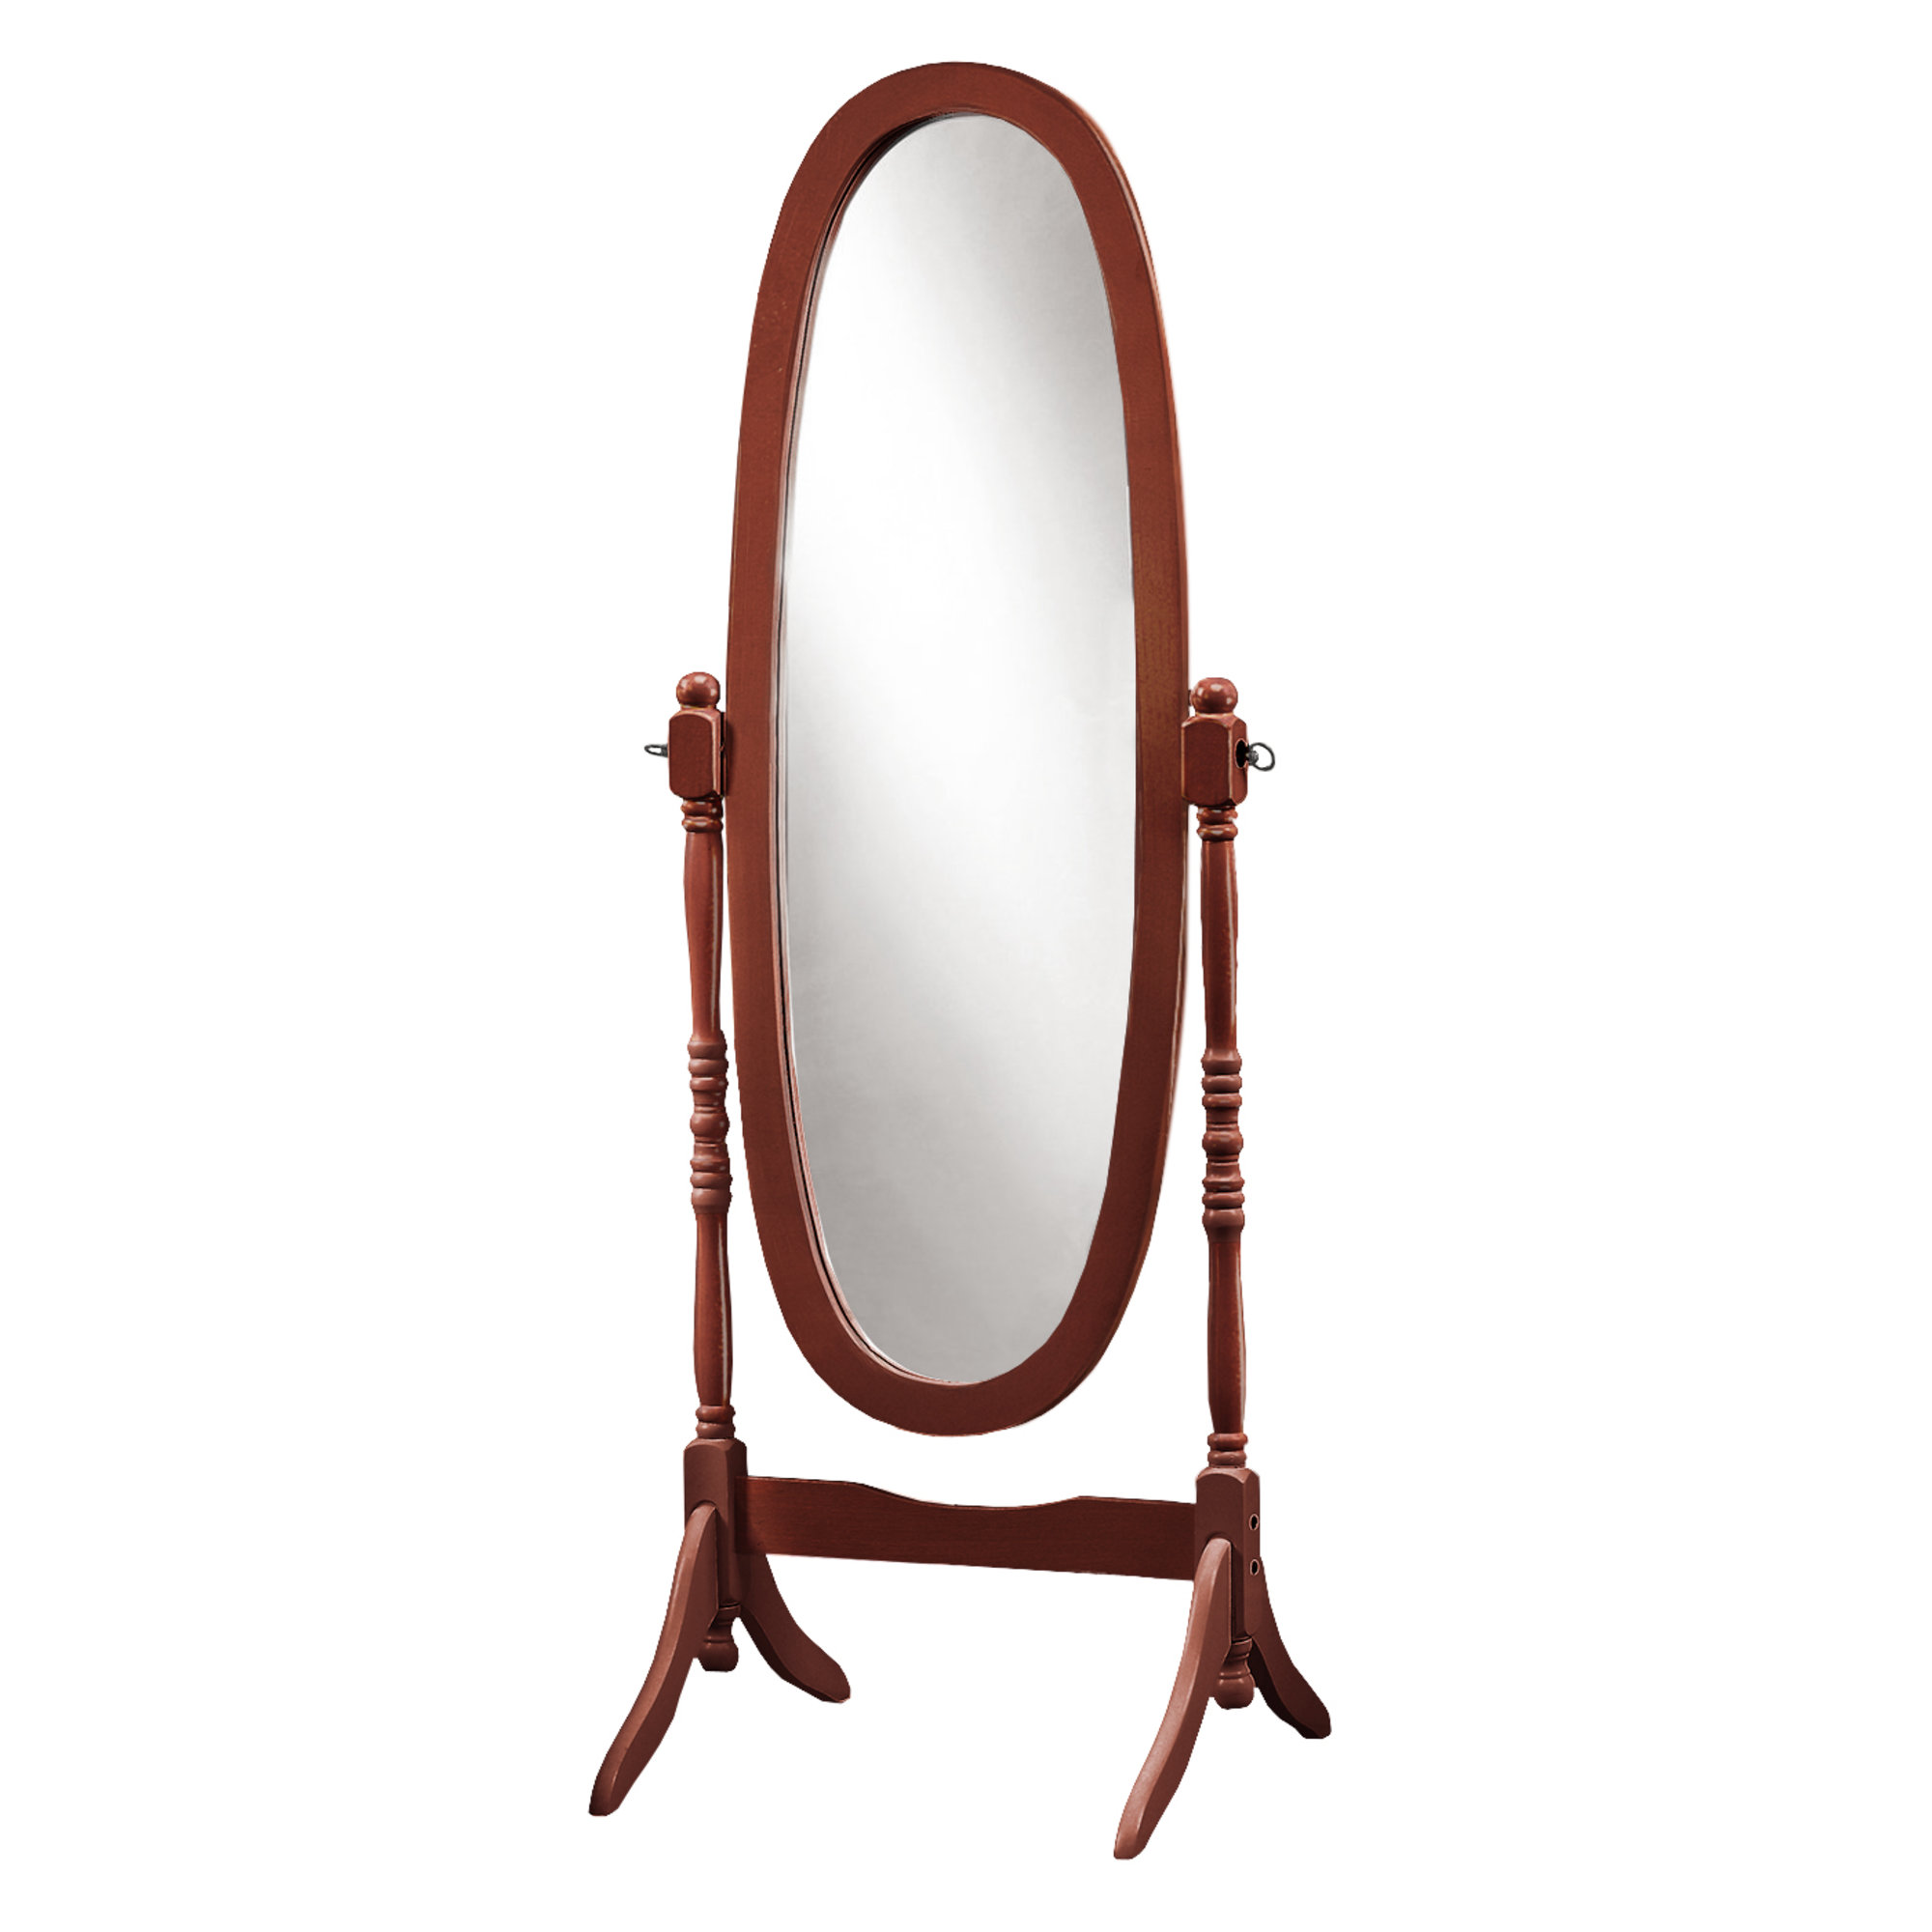 20" x 23" 59" Walnut Oval Wood Frame Mirror